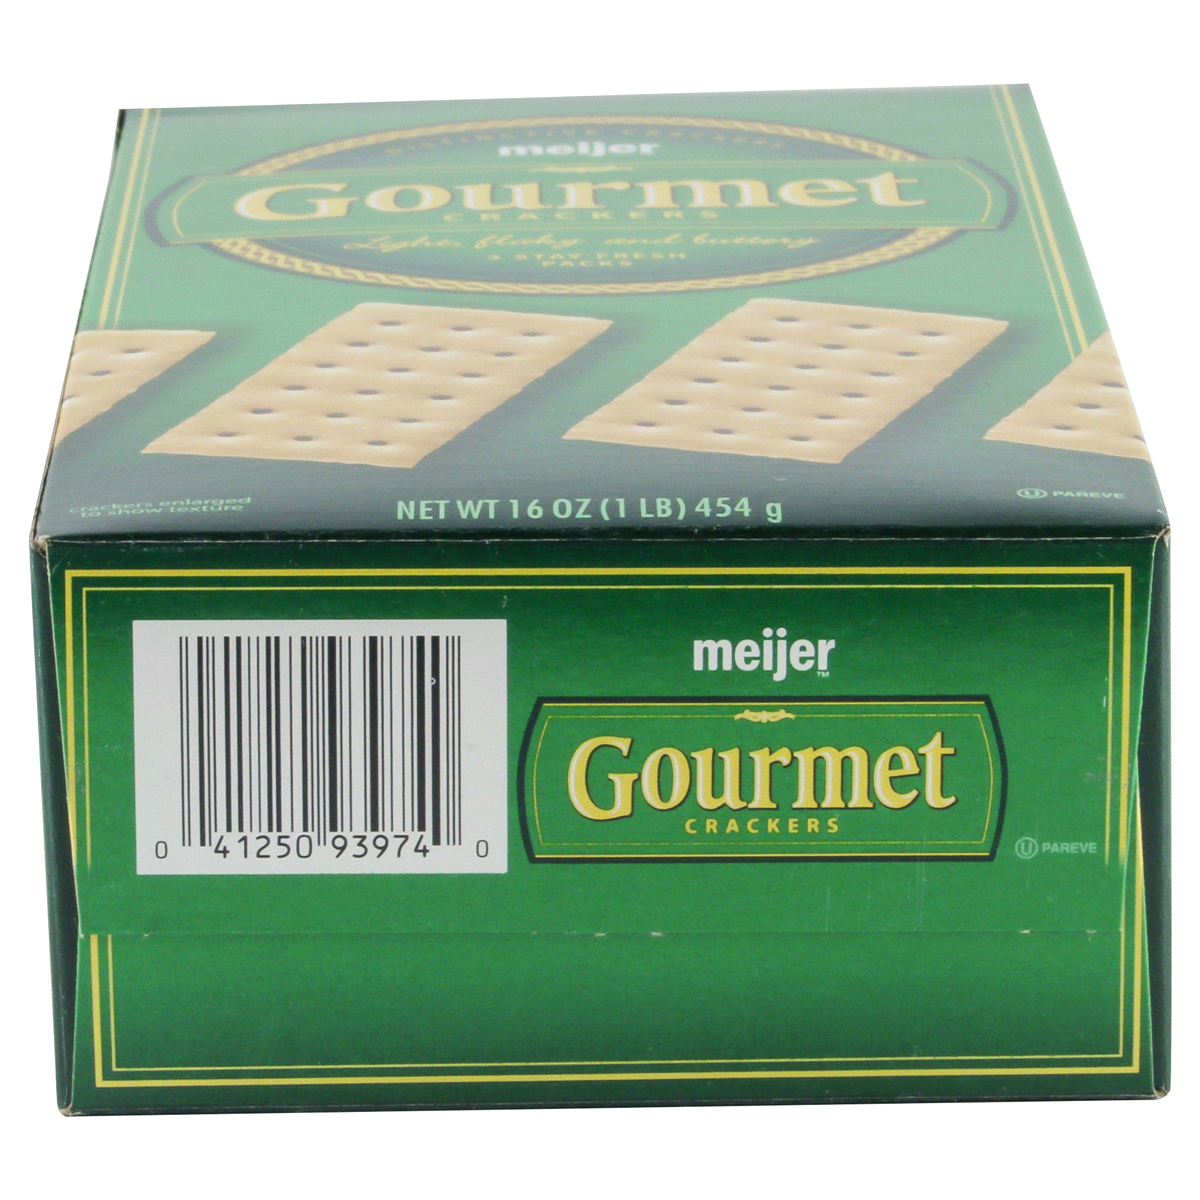 slide 6 of 6, Meijer Original Crew Crackers, 16 oz